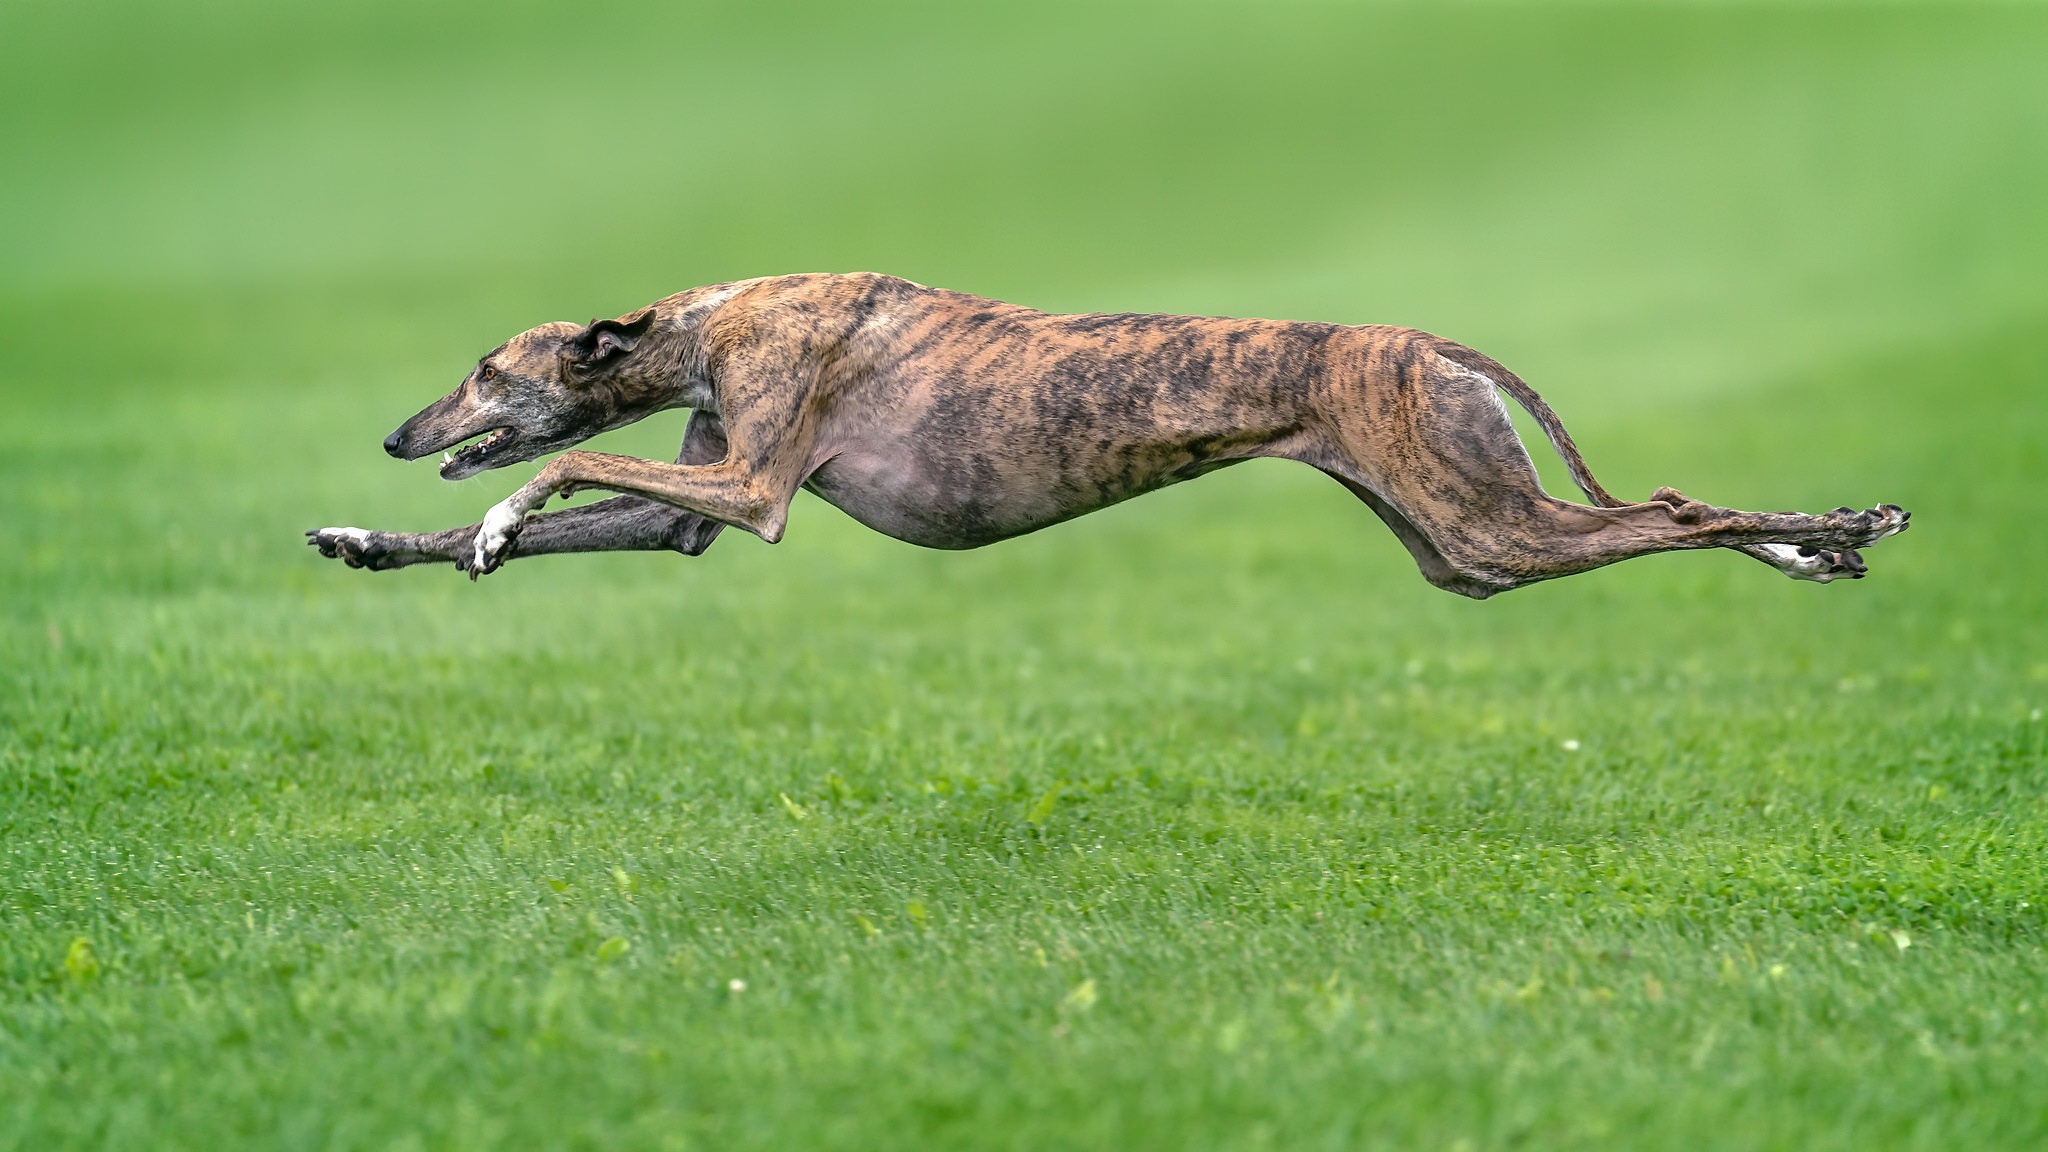 General 2048x1152 green dog animals running greyhound side view grass